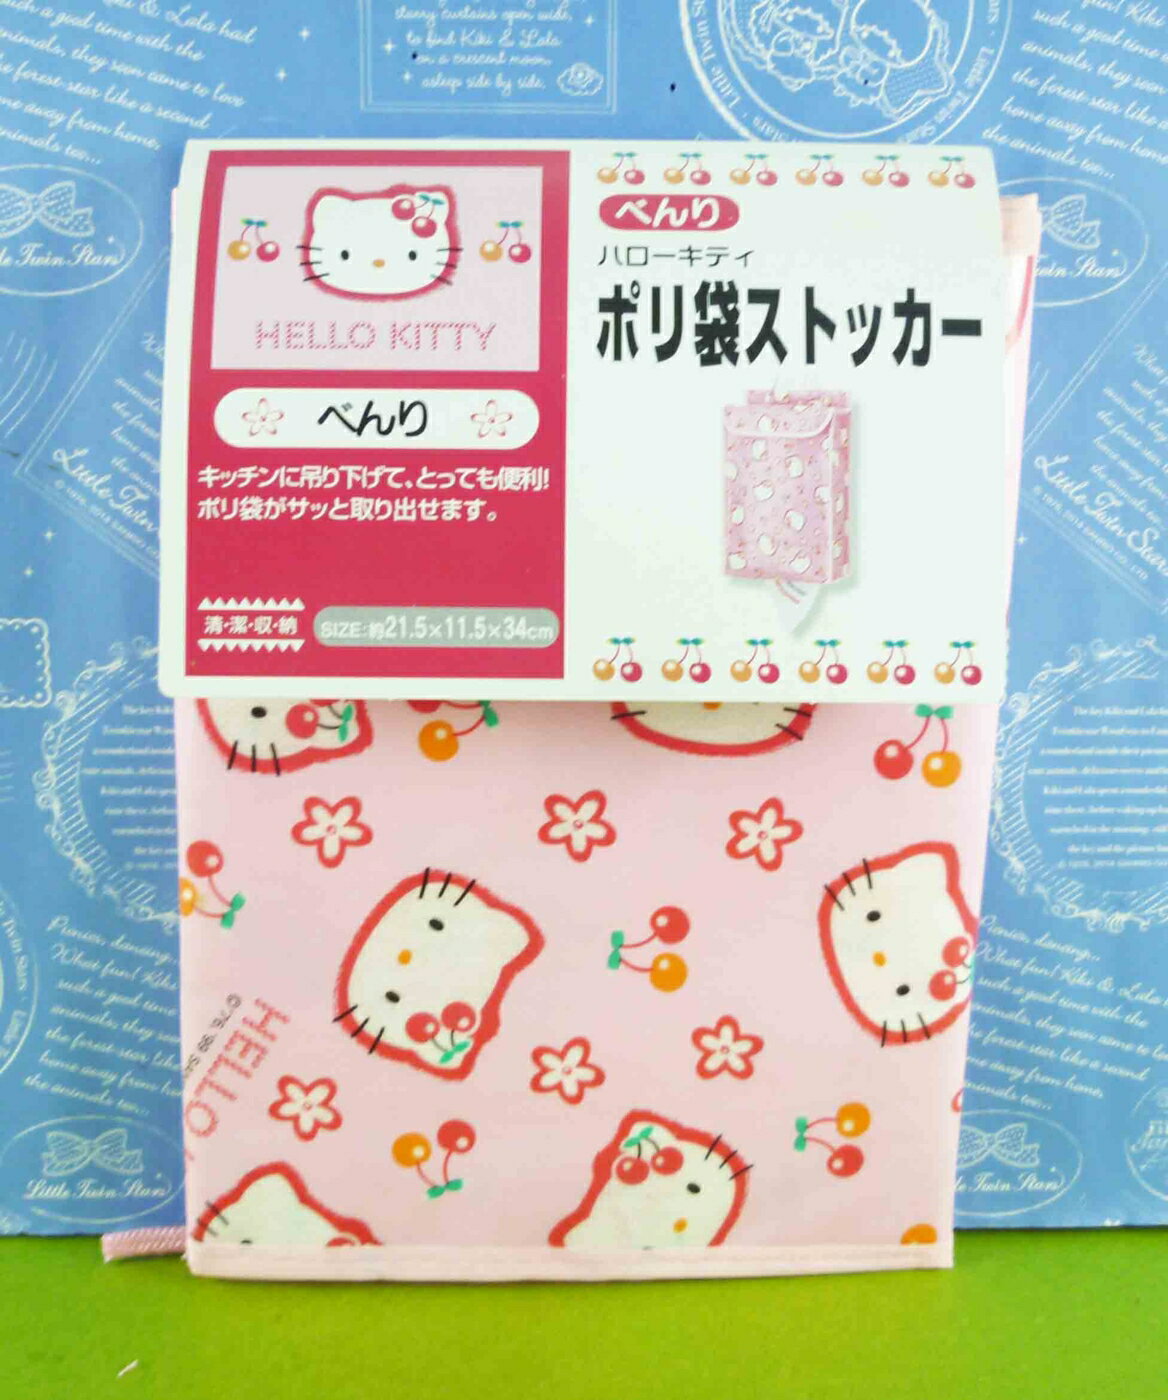 【震撼精品百貨】Hello Kitty 凱蒂貓 整理收納袋-可裝面紙-粉色底-KT櫻桃圖案【共1款】 震撼日式精品百貨